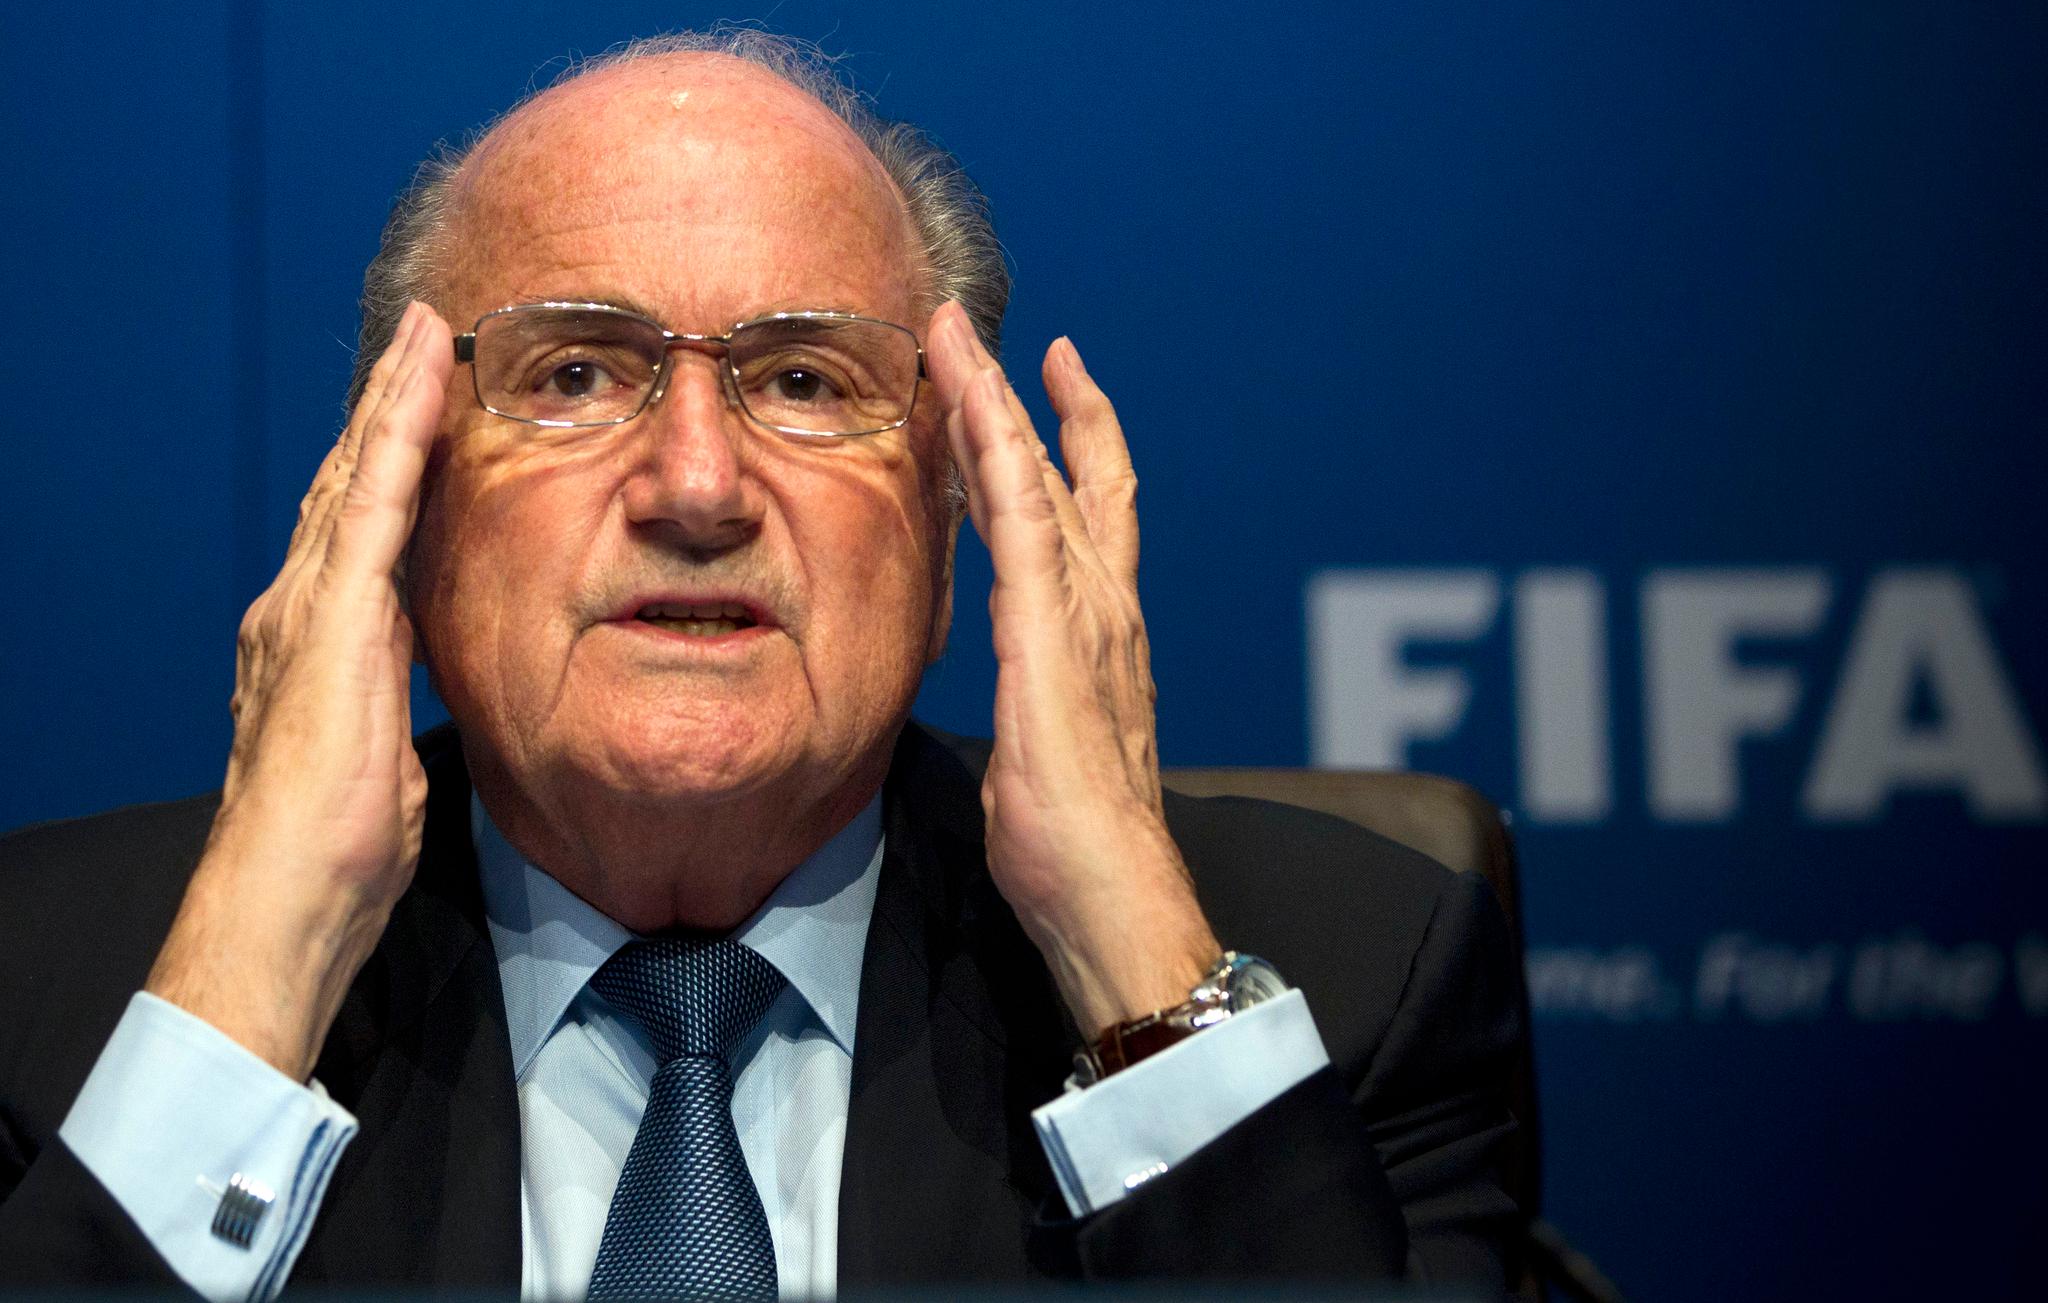 Det stormer rundt Sepp Blatter. Sveitsiske myndigheter har tatt ut siktelse mot Blatter. Nå krever FIFAs hovedsponsorer at Blatter går av med umiddelbar virkning.